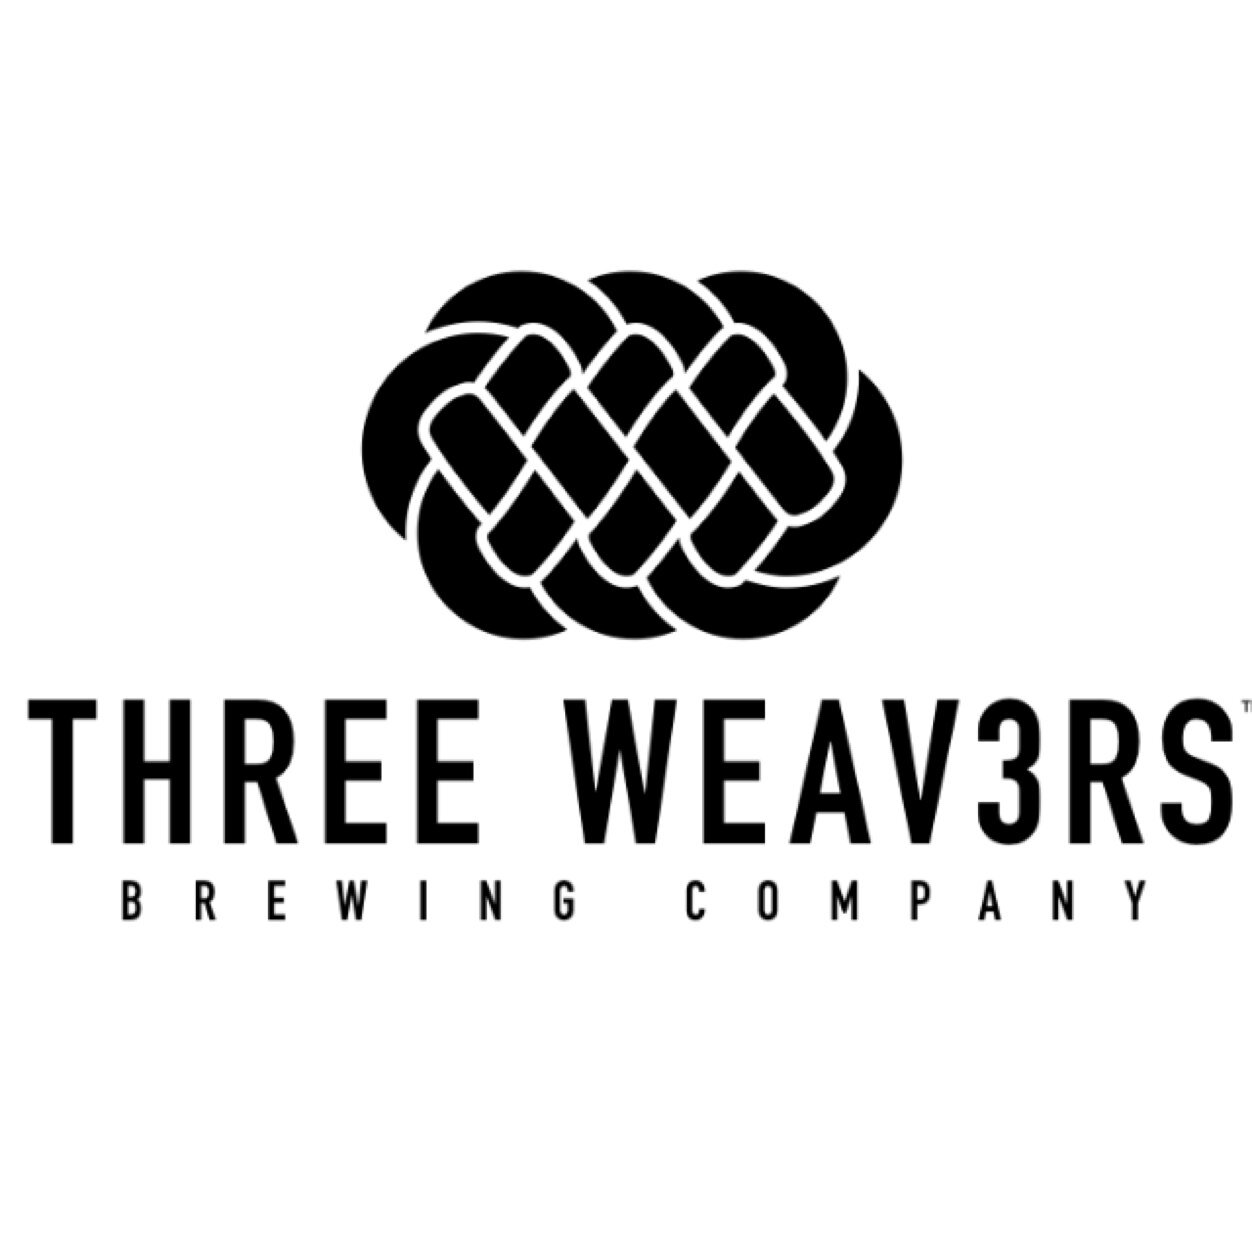 weavers